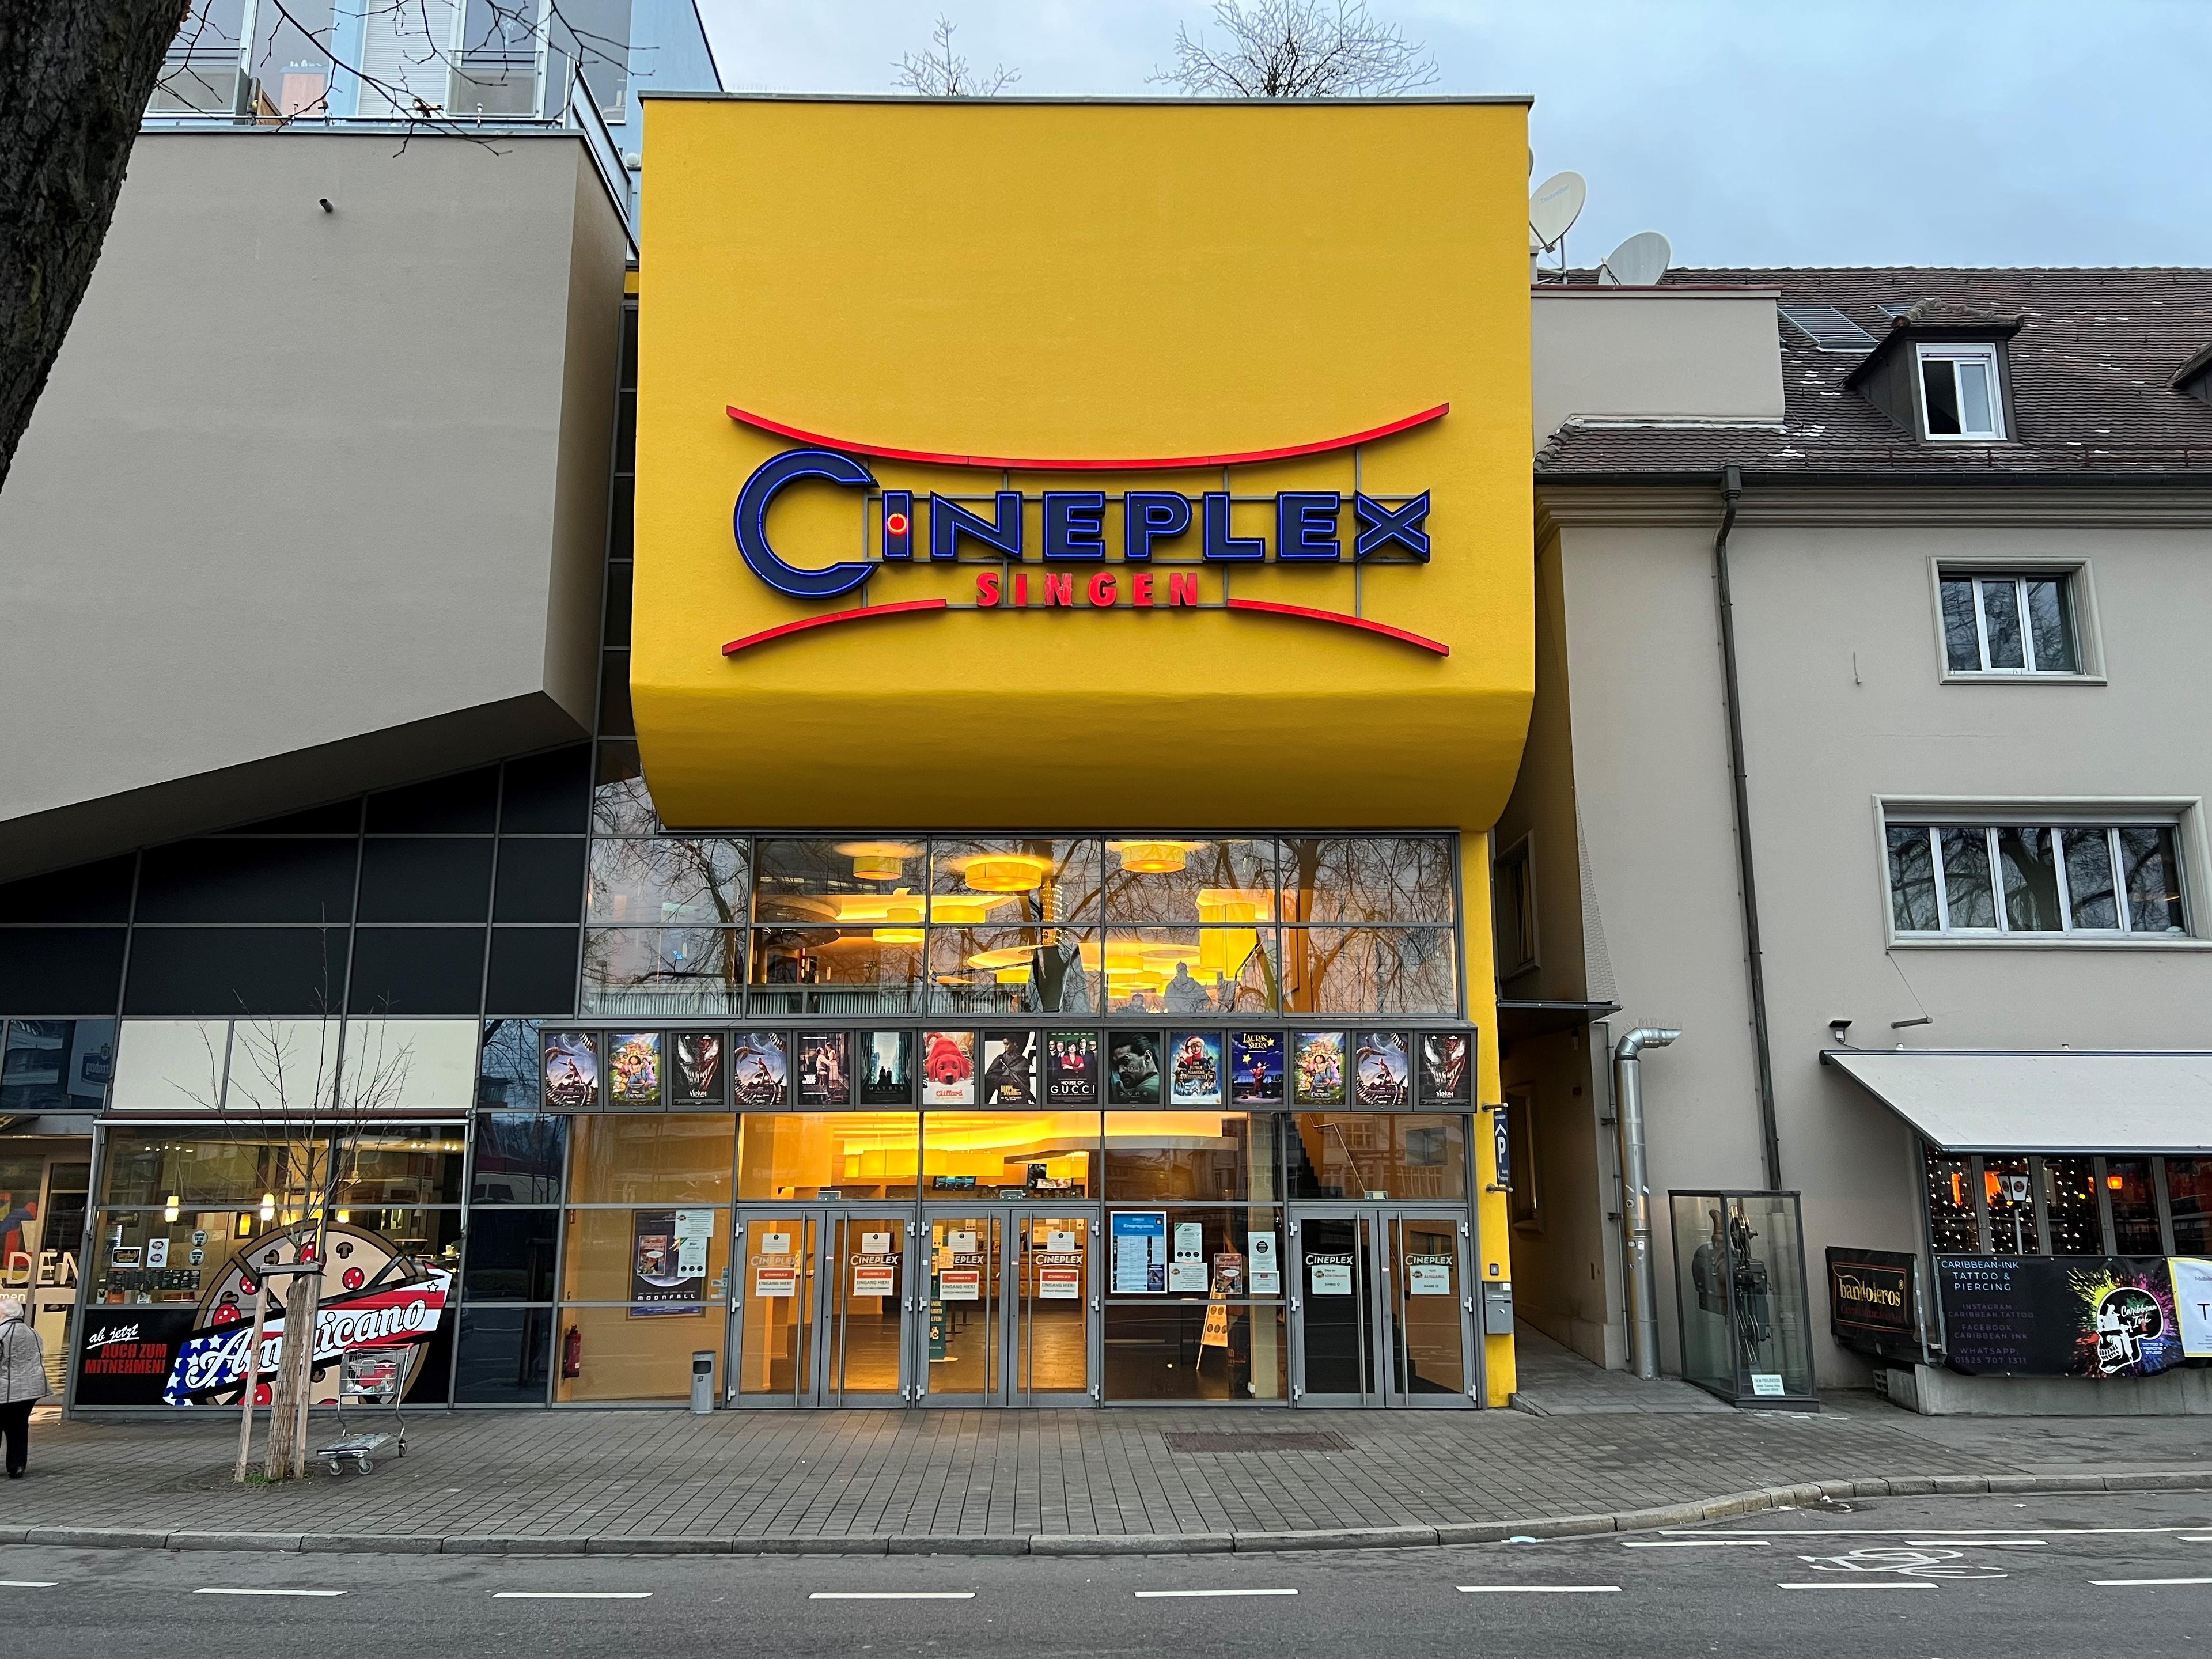 Cineplex Singen